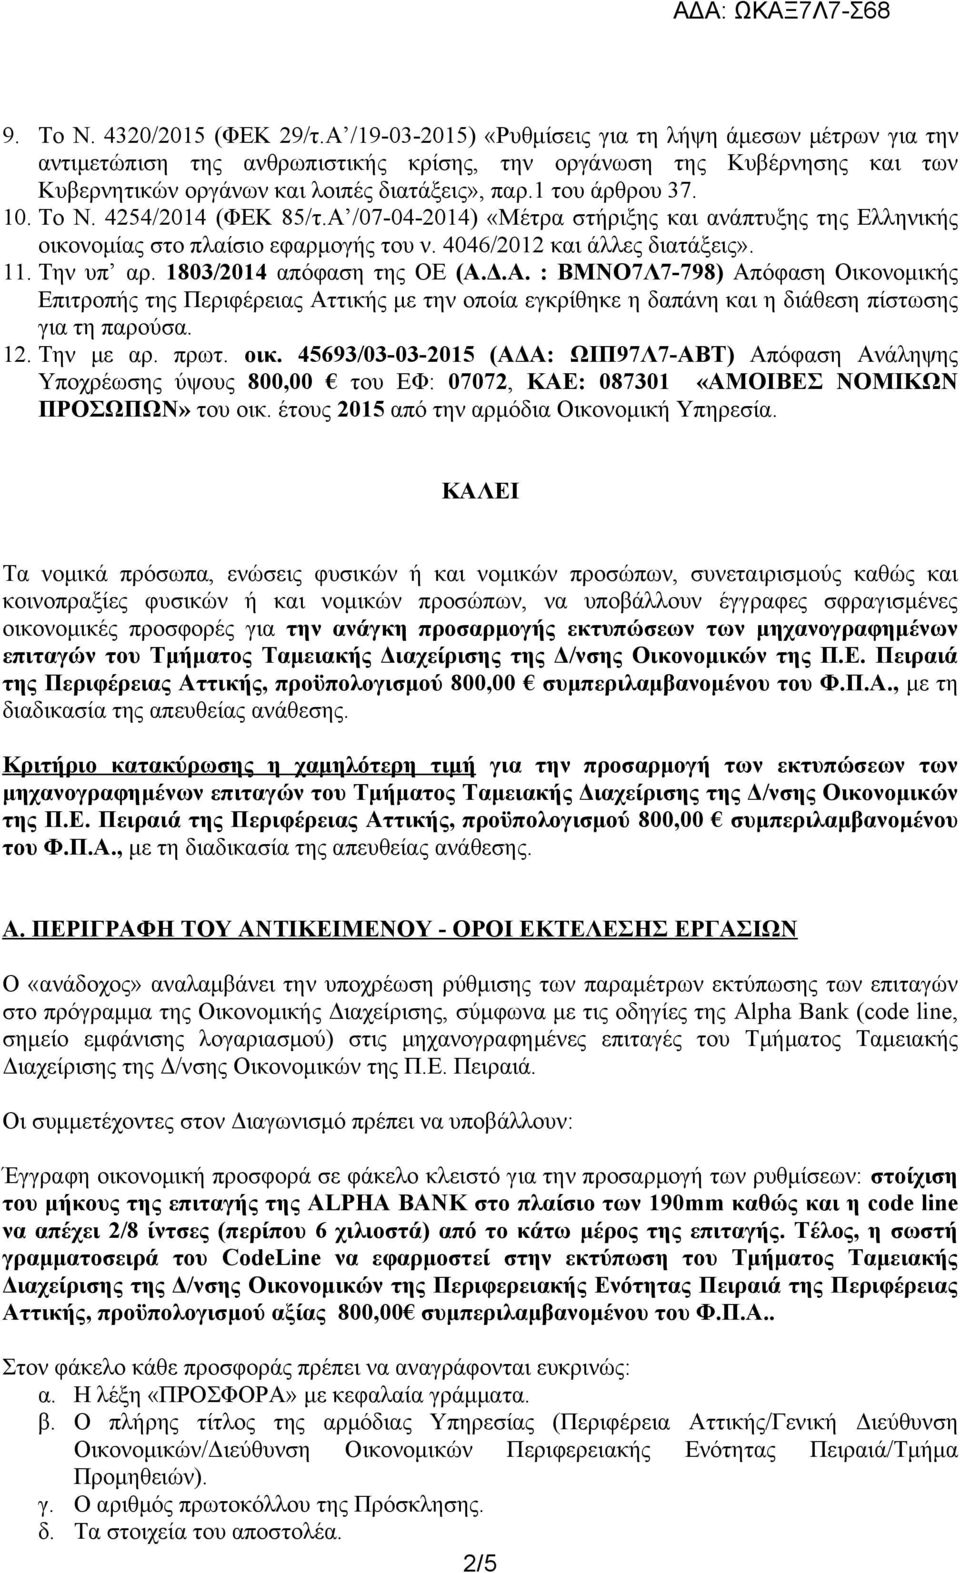 10. Το Ν. 4254/2014 (ΦΕΚ 85/τ.Α /07-04-2014) «Μέτρα στήριξης και ανάπτυξης της Ελληνικής οικονομίας στο πλαίσιο εφαρμογής του ν. 4046/2012 και άλλες διατάξεις». 11. Την υπ αρ.